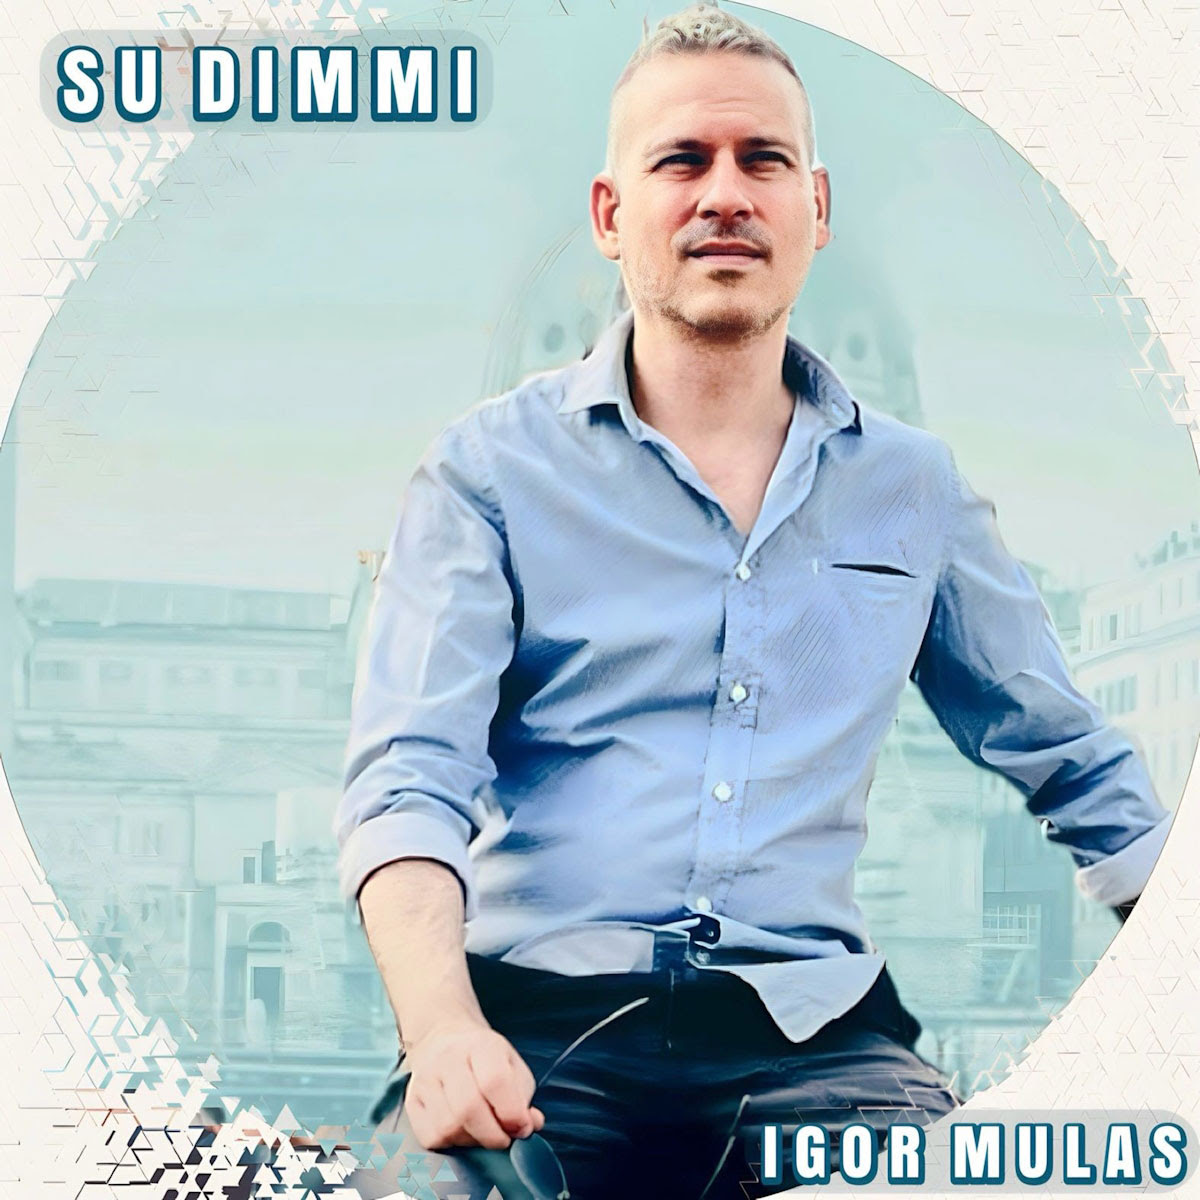 IGOR MULAS: venerdì 6 ottobre esce in radio e in digitale “SU DIMMI” il nuovo singolo